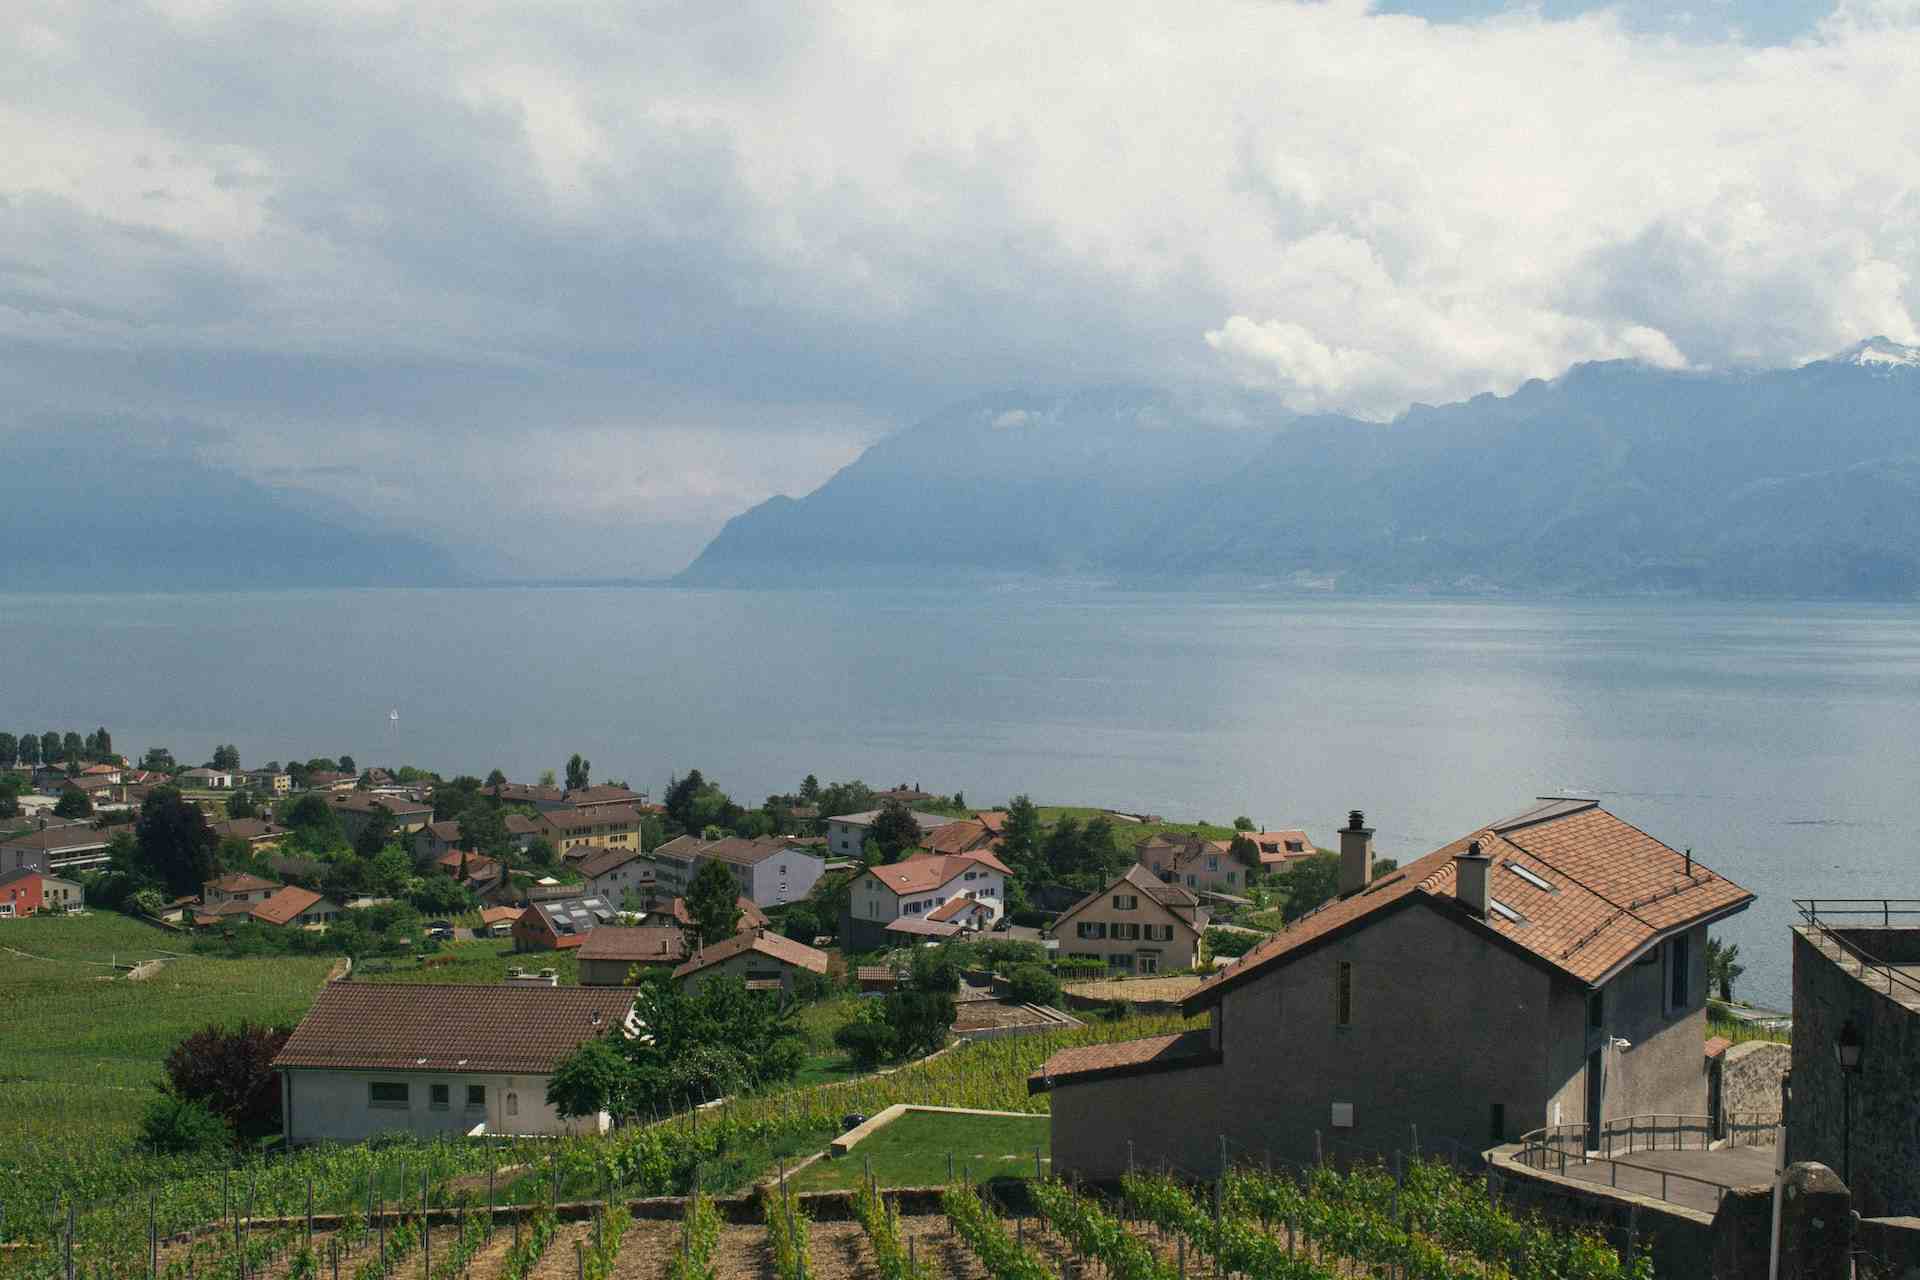 Domaine du Priez, producer in Genolier canton of Vaud in Switzerland